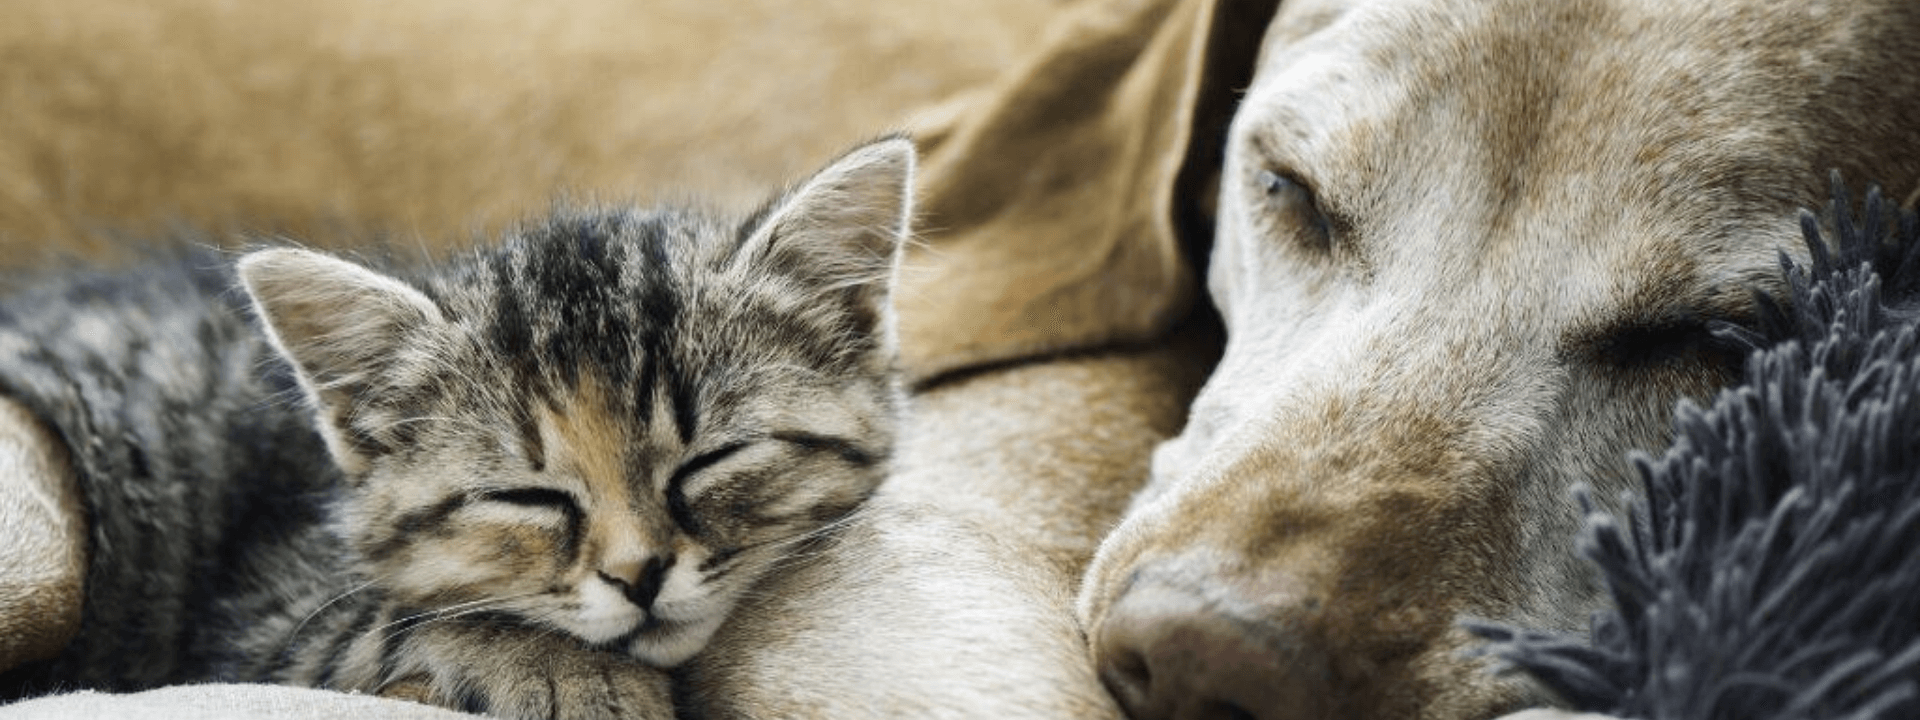 dog and cat euthanasia